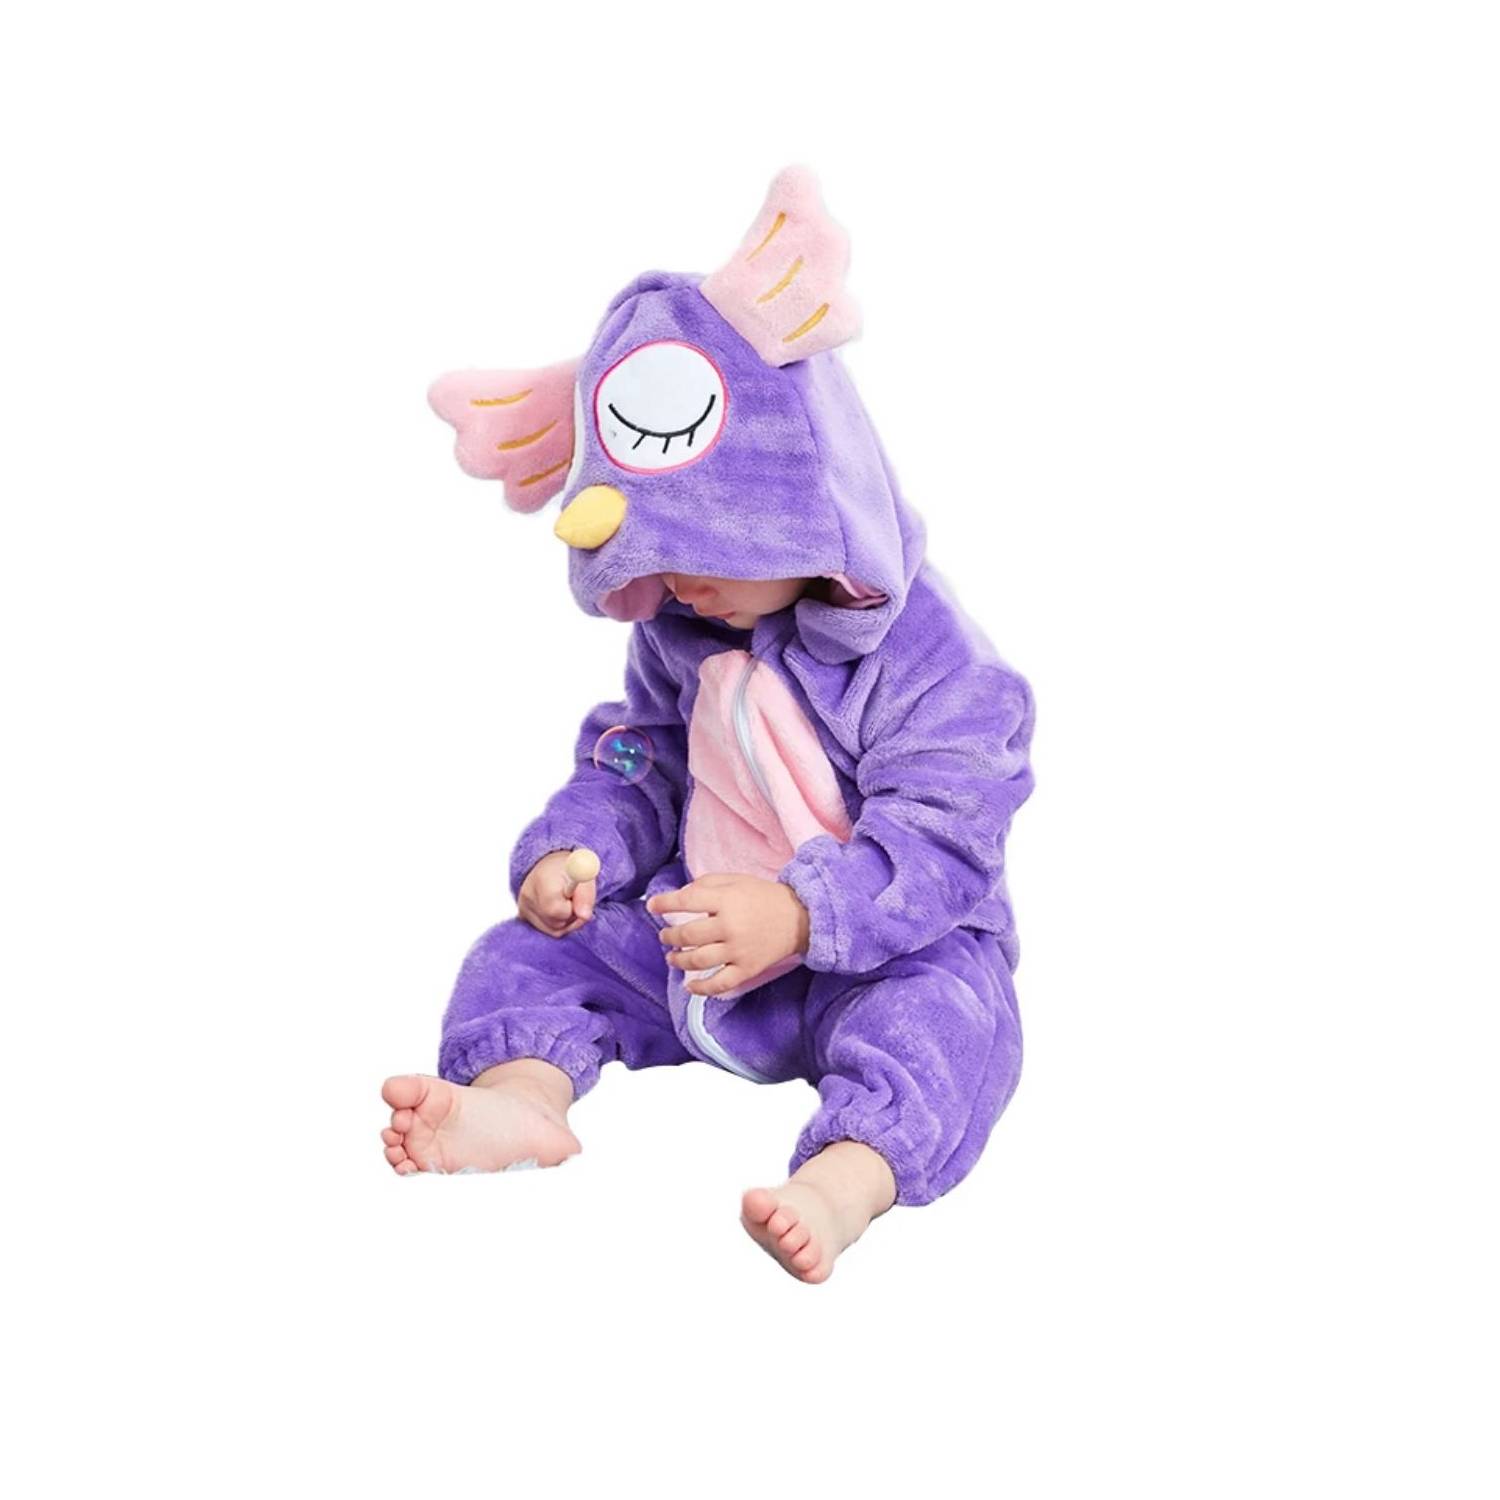 Pijama Disfraz Enteritos Para Bebe Animales Kigurumi Buho falabella.com